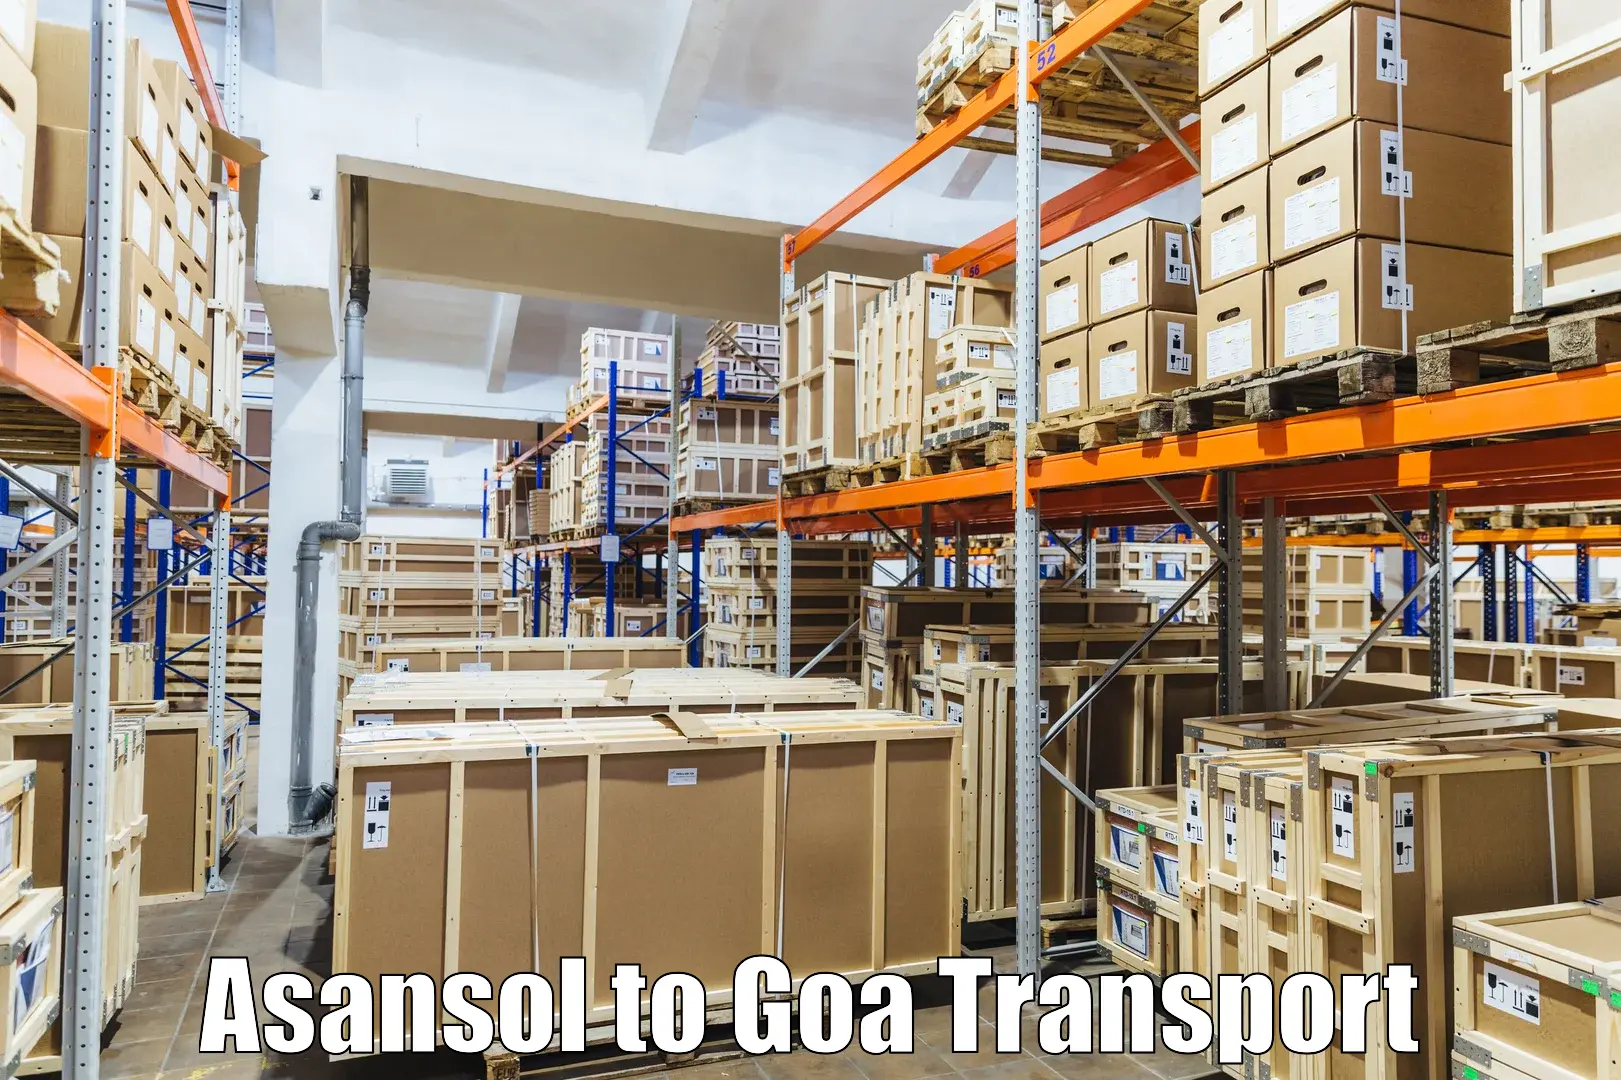 Online transport booking Asansol to Bicholim